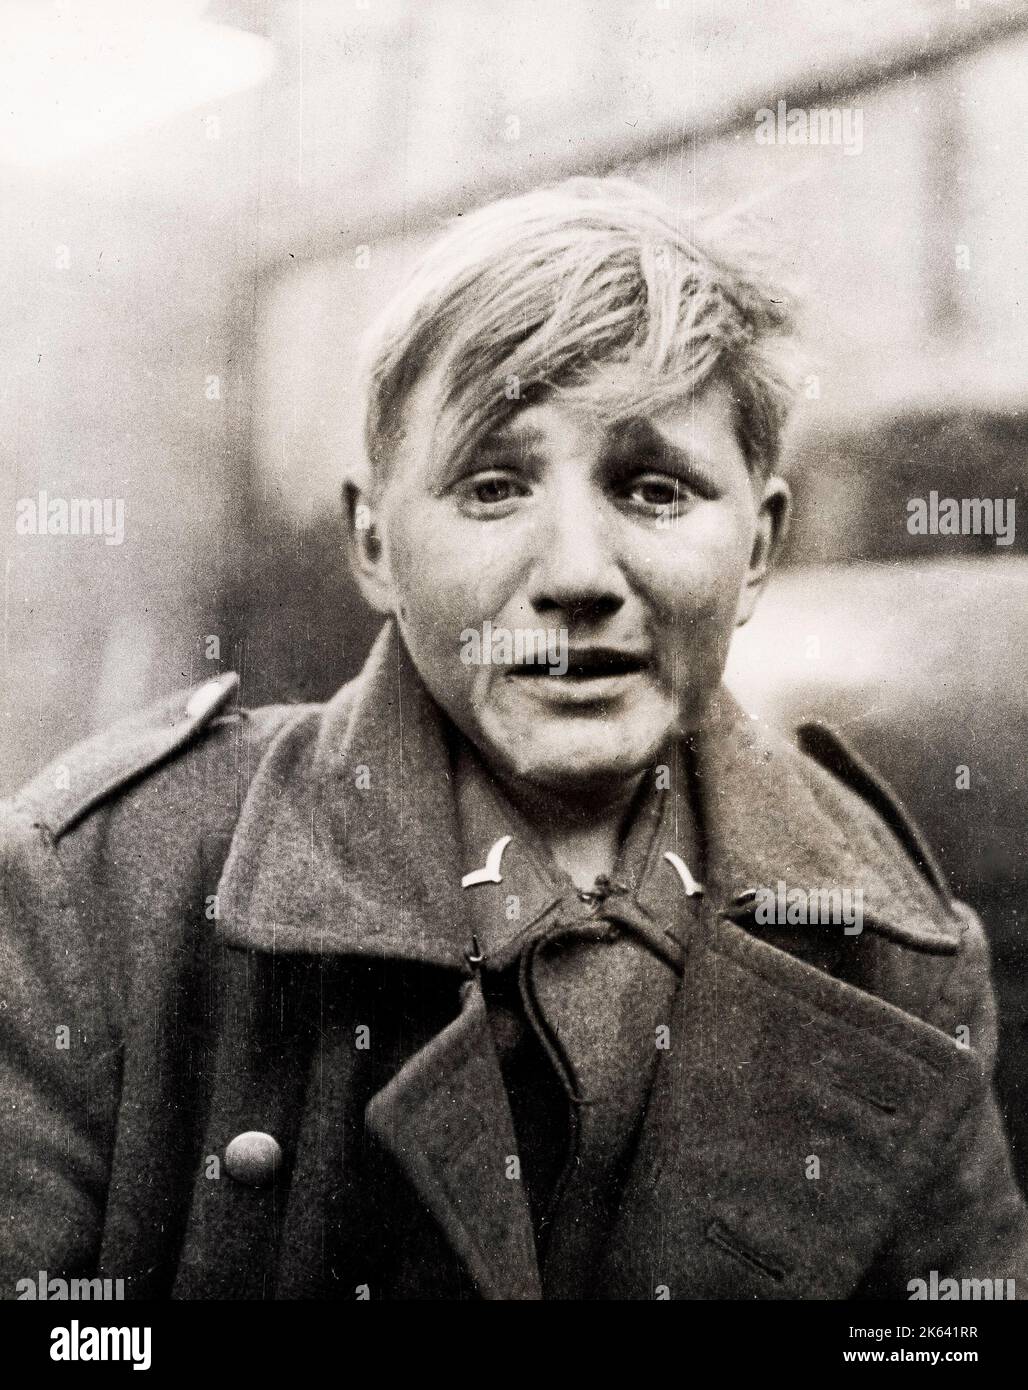 La deuxième Guerre mondiale - un jeune soldat allemand capturé en détresse - a la réputation d'être âgé de seulement 15 ans Banque D'Images